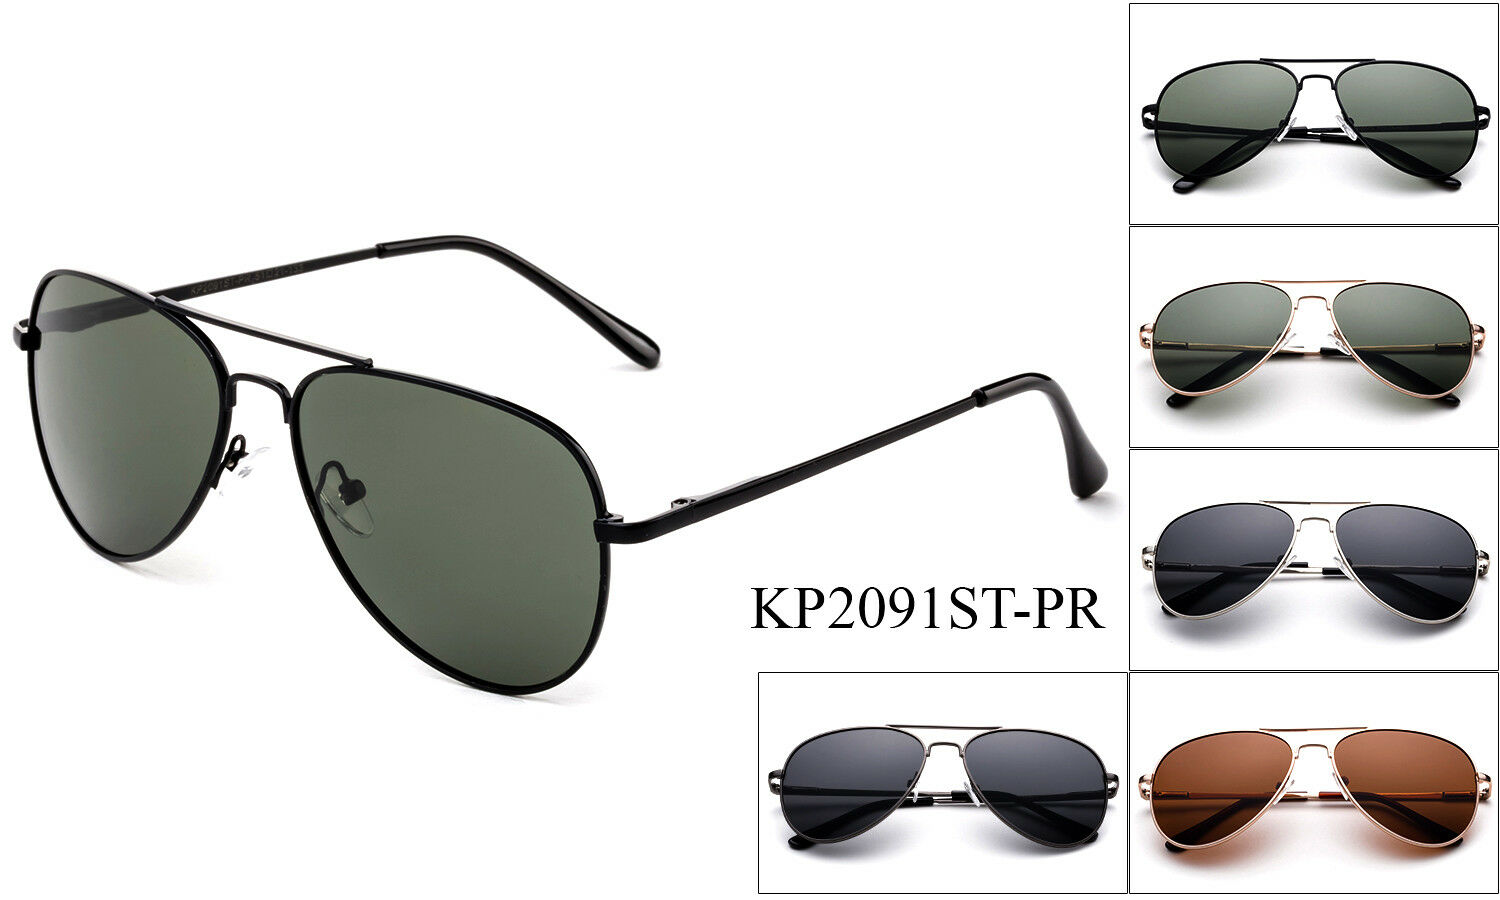 Polarized Kids Aviator Sunglasses Stainless Steel Frame Boys Girls Spring Hinge